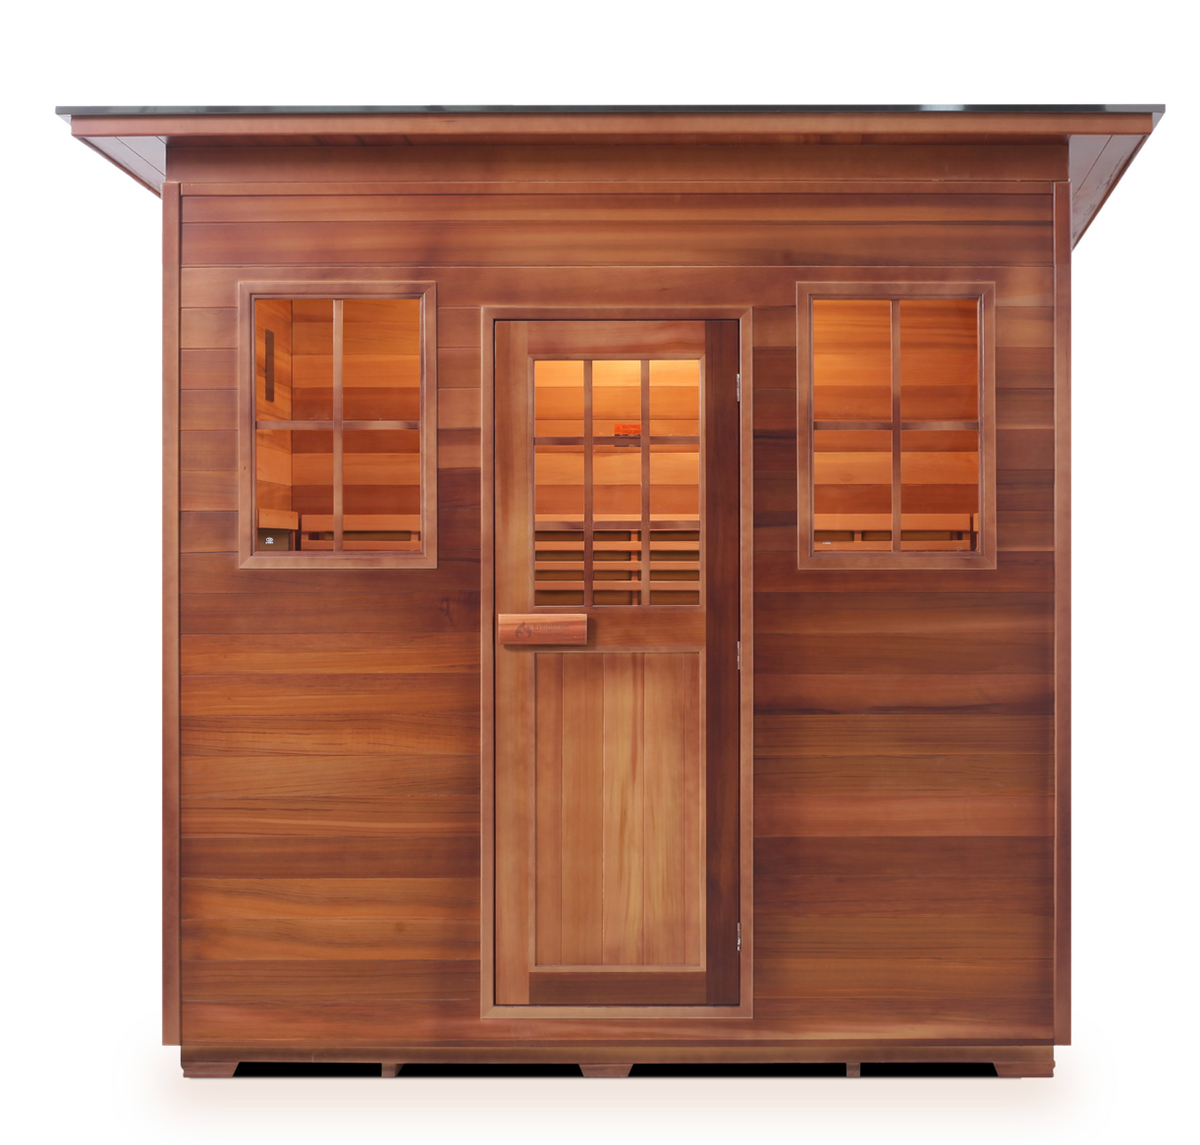 Enlighten MoonLight 5 Person Indoor/Outdoor Traditional Sauna